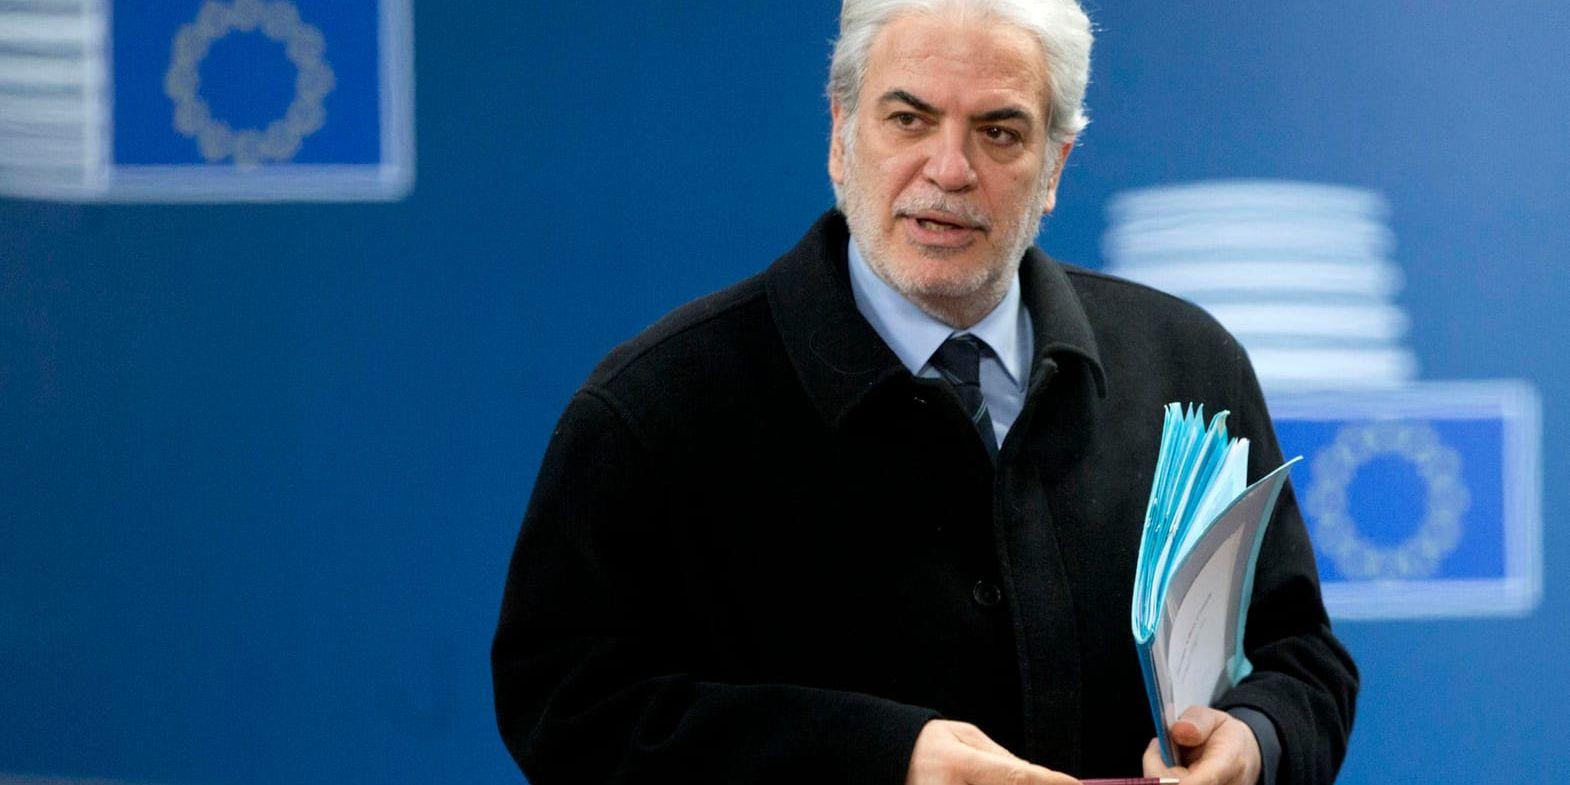 Christos Stylianides är EU-kommissionär med ansvar för humanitärt bistånd och krishantering.